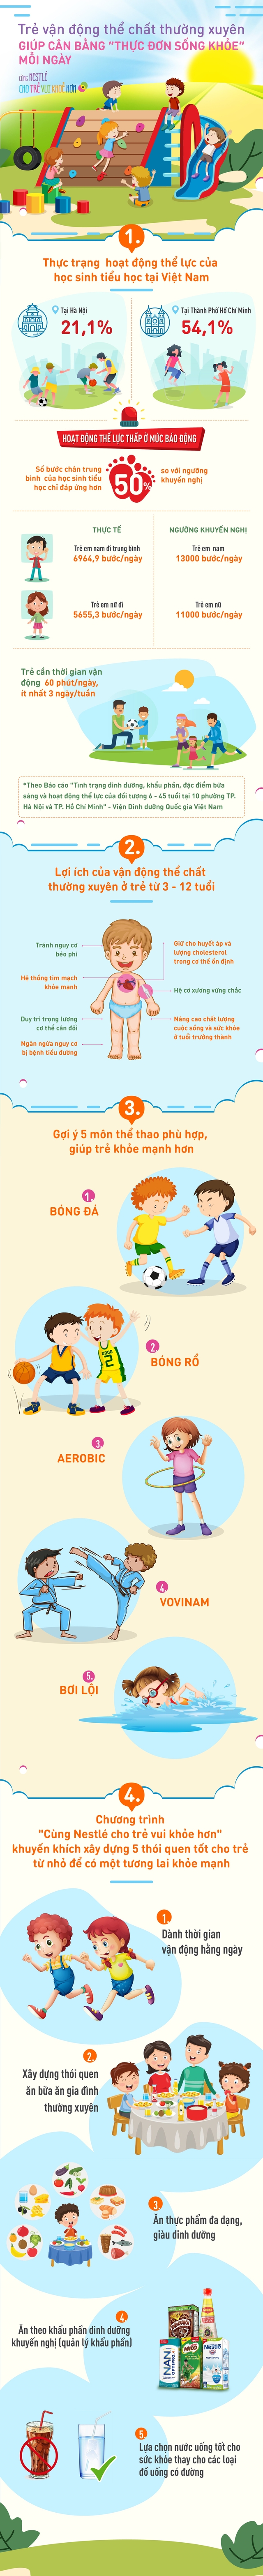 Trẻ vận động thể chất thường xuyên giúp cân bằng “thực đơn sống khỏe” mỗi ngày - Ảnh 1.